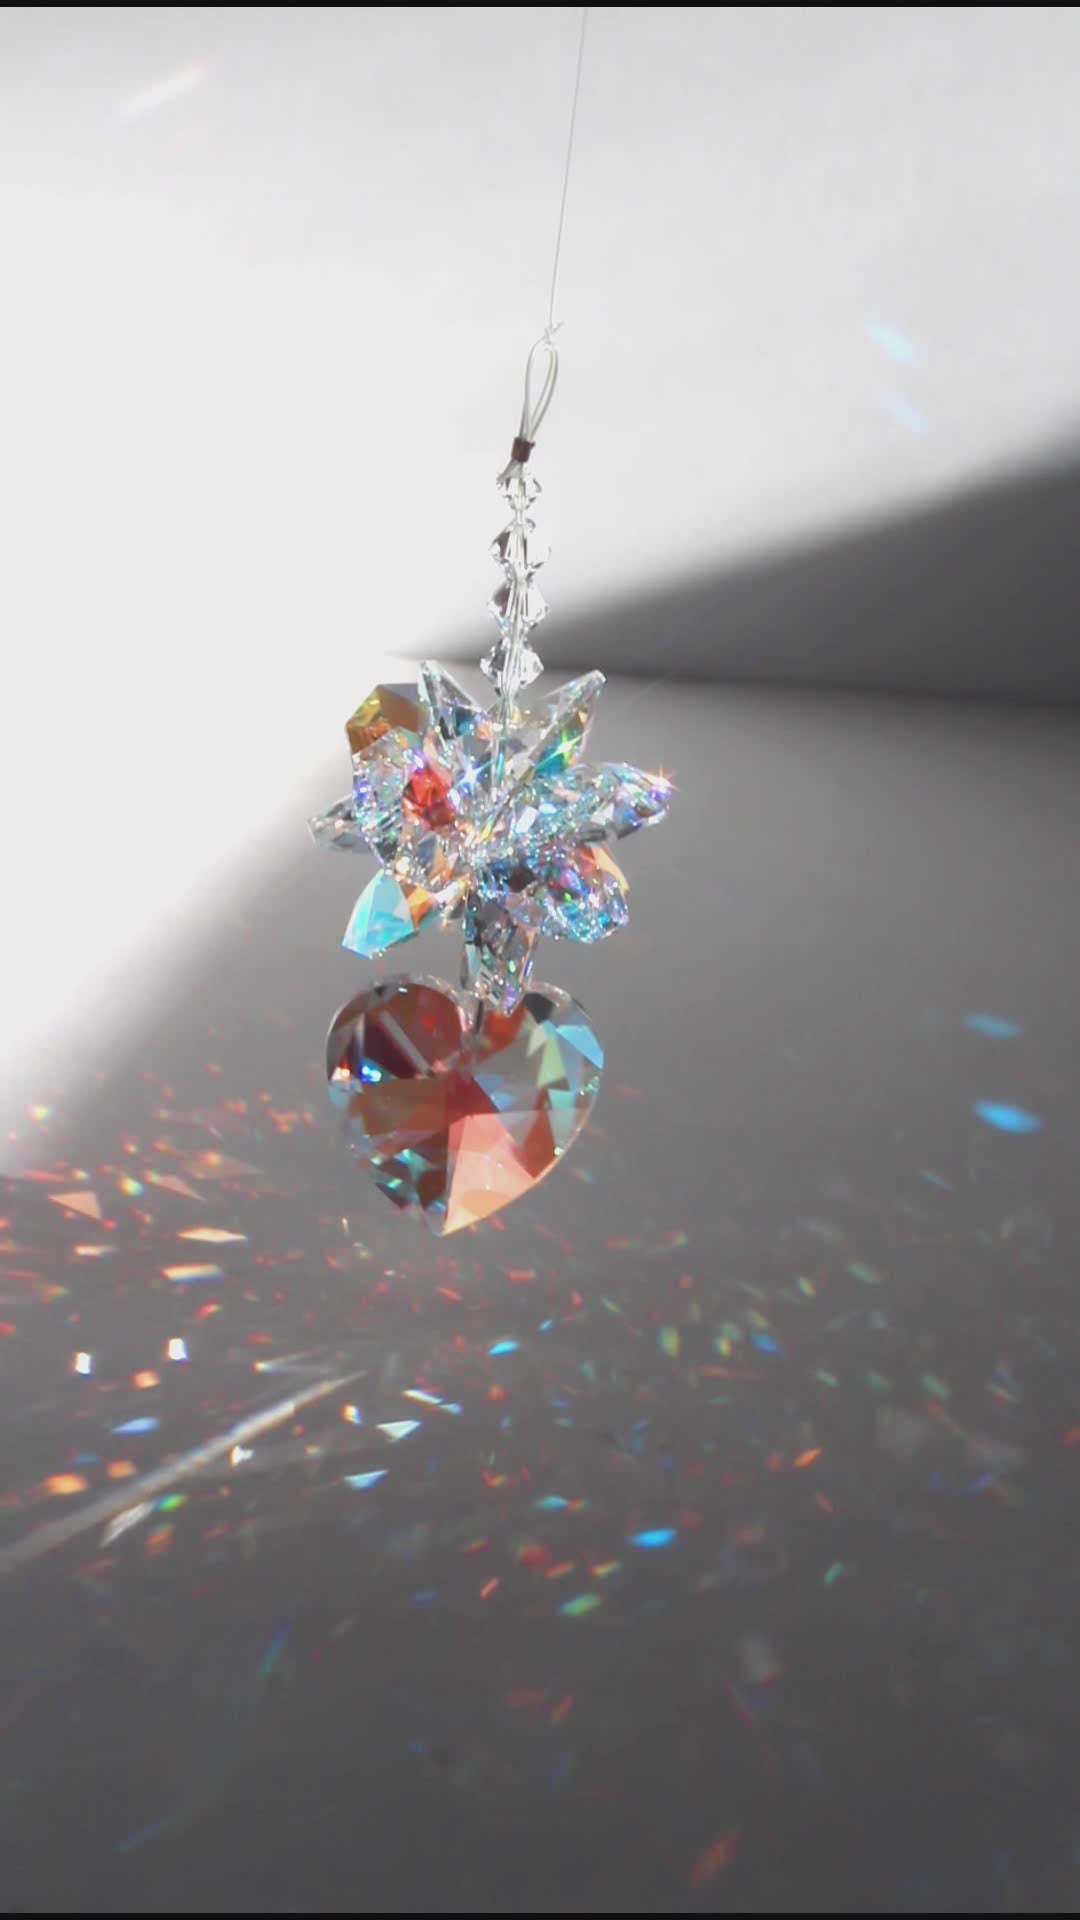 Gorgeous Window Suncatcher Crystal Heart Pendulum A Sunlight Catcher for Crystal Feng Shui Decor, Anniversary Wedding Gift